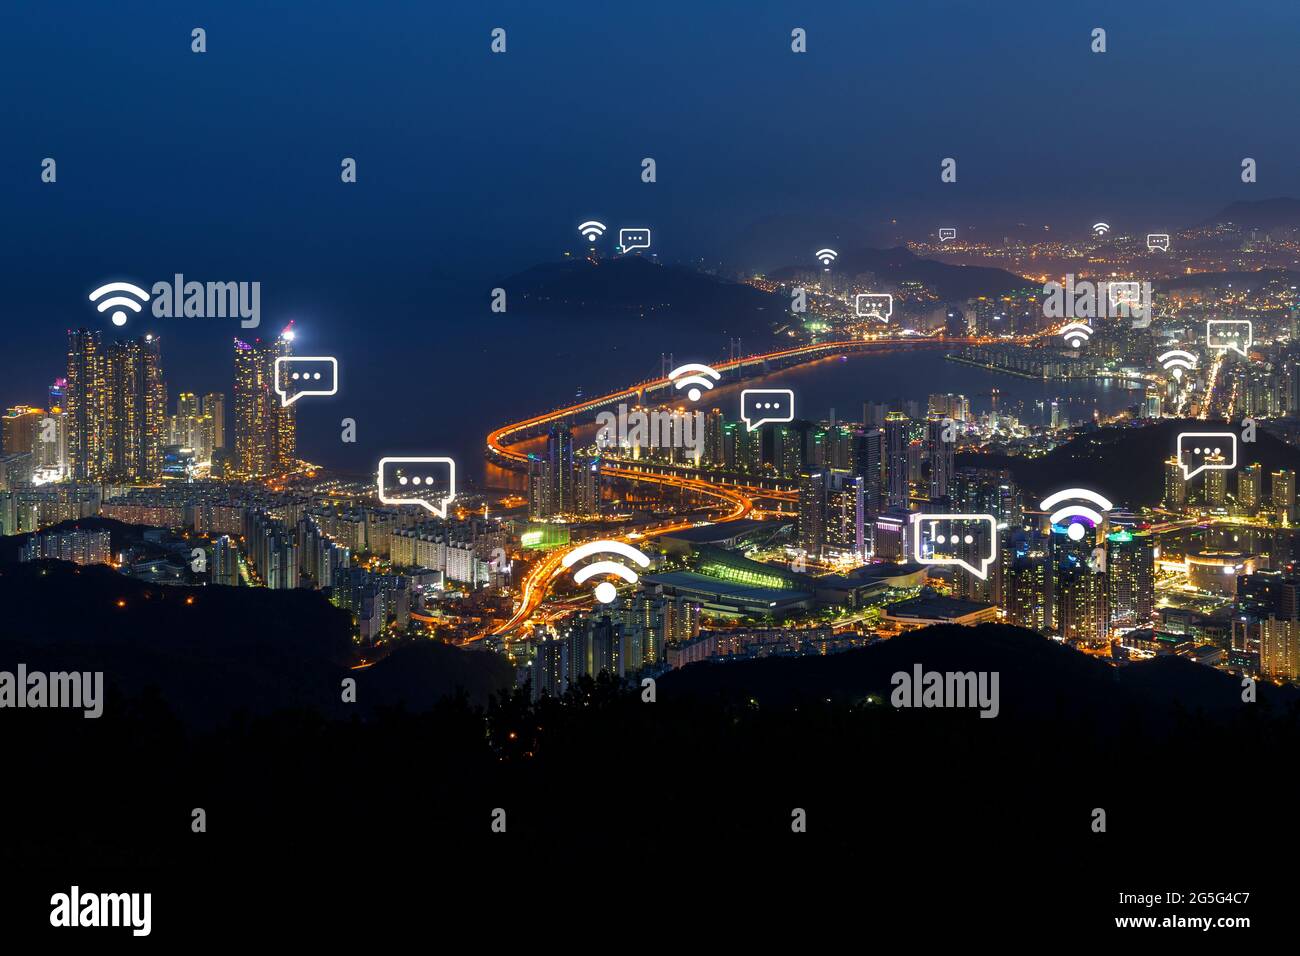 Malerische Stadtansicht der städtischen Skyline von Busan in Südkorea von oben bei Nacht. Drahtlose Netzwerkverbindung, WiFi, Smart City und Online-Messaging-Konzept Stockfoto